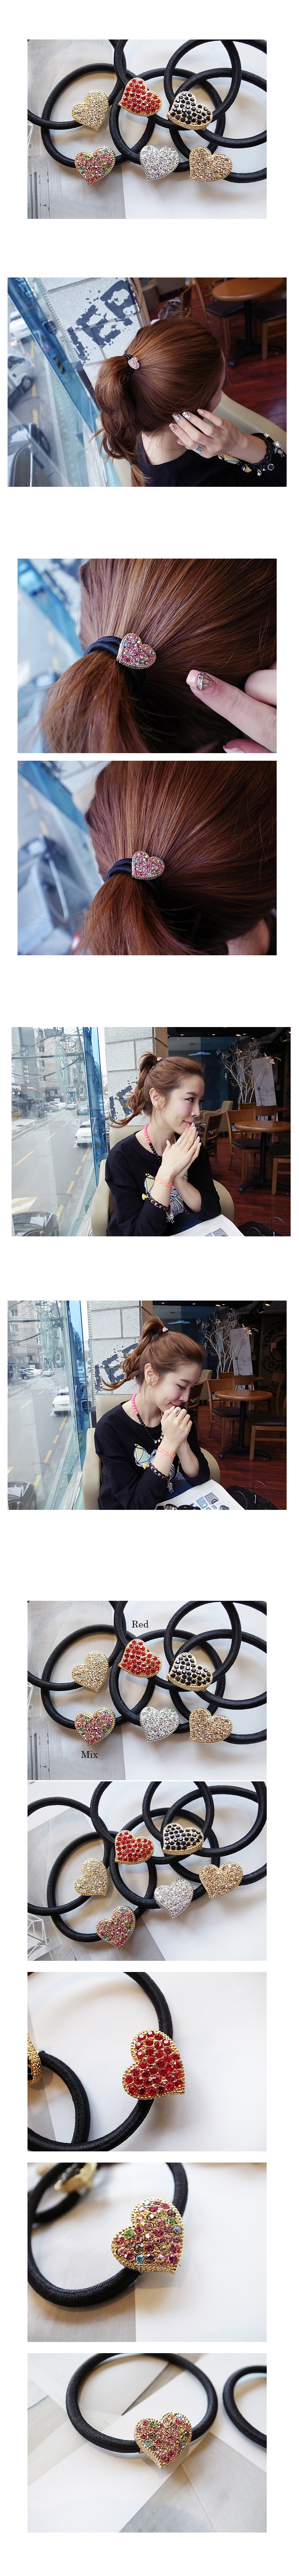 韓國 NaniWorld 晶鑽風愛心髮圈 #2923 紅色